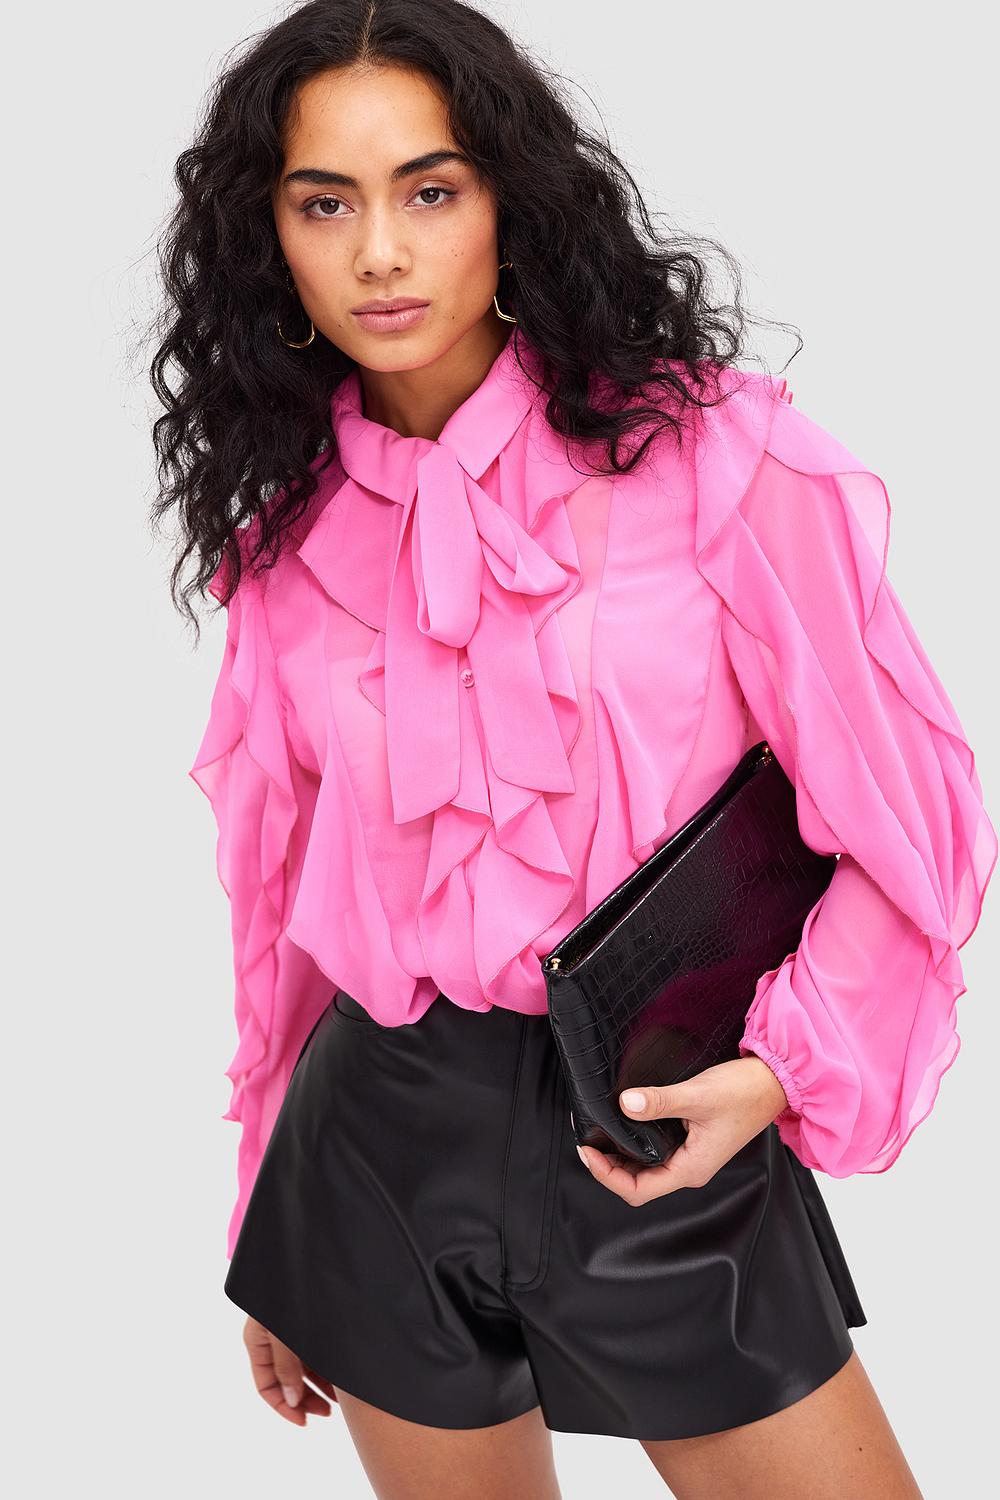 Roze blouse